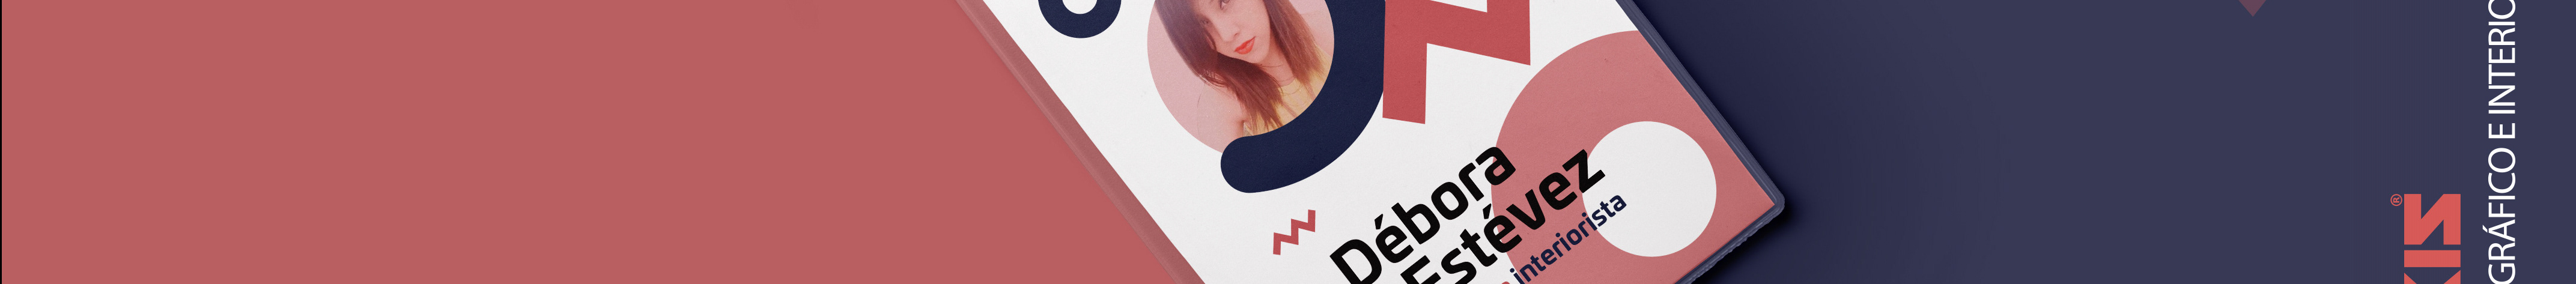 Deborah Estevez's profile banner